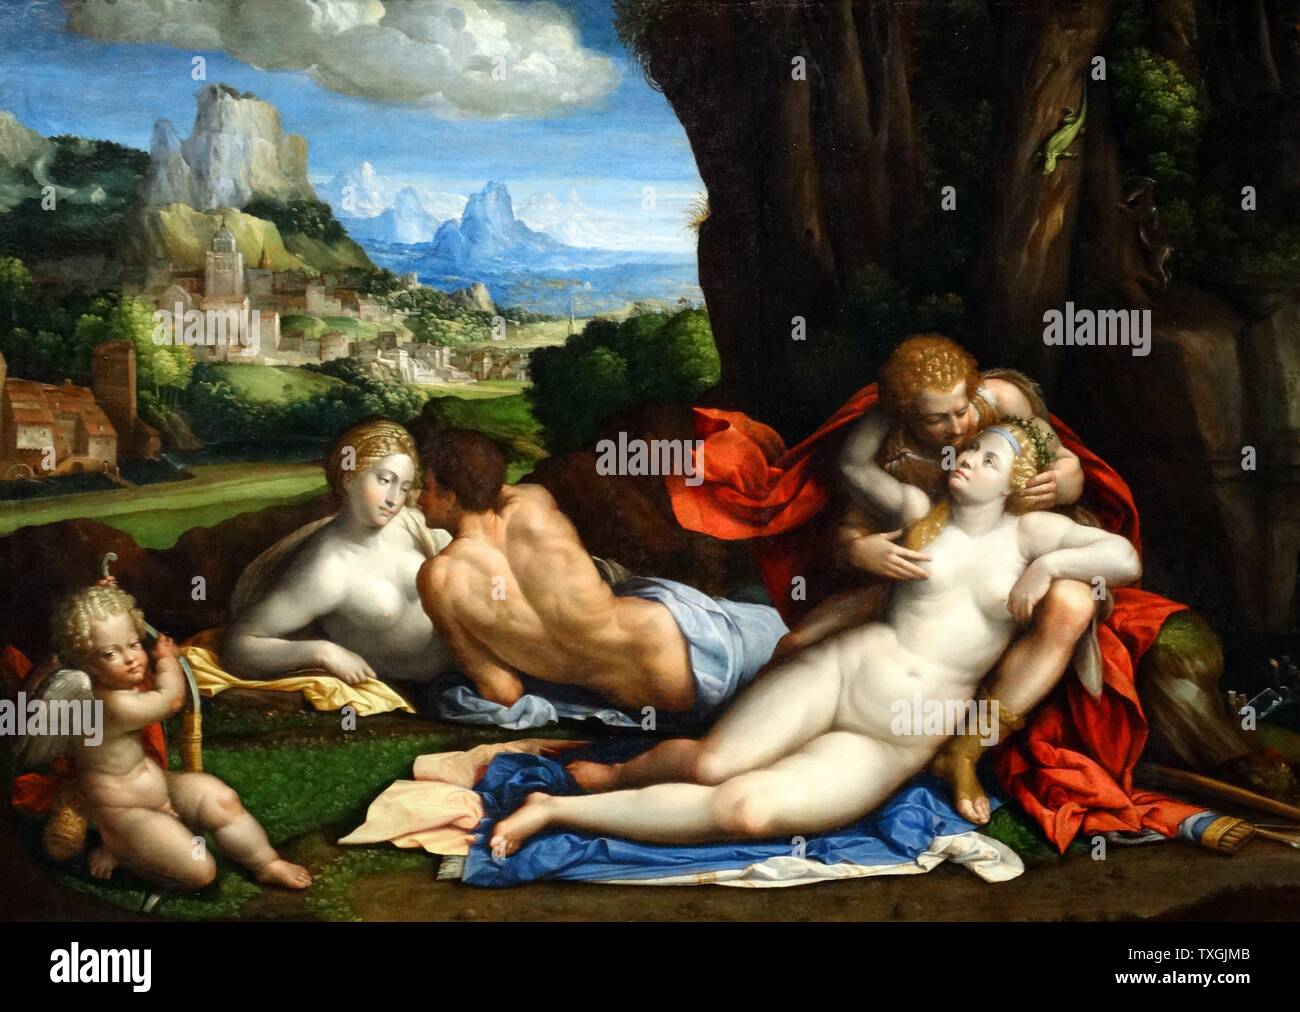 Gemälde mit dem Titel "Eine Allegorie der Liebe" von Benvenuto Tisi (1481-1559) ein spät-Renaissance-manieristischen italienischen Maler der Schule von Ferrara. Datiert aus dem 16. Jahrhundert Stockfoto